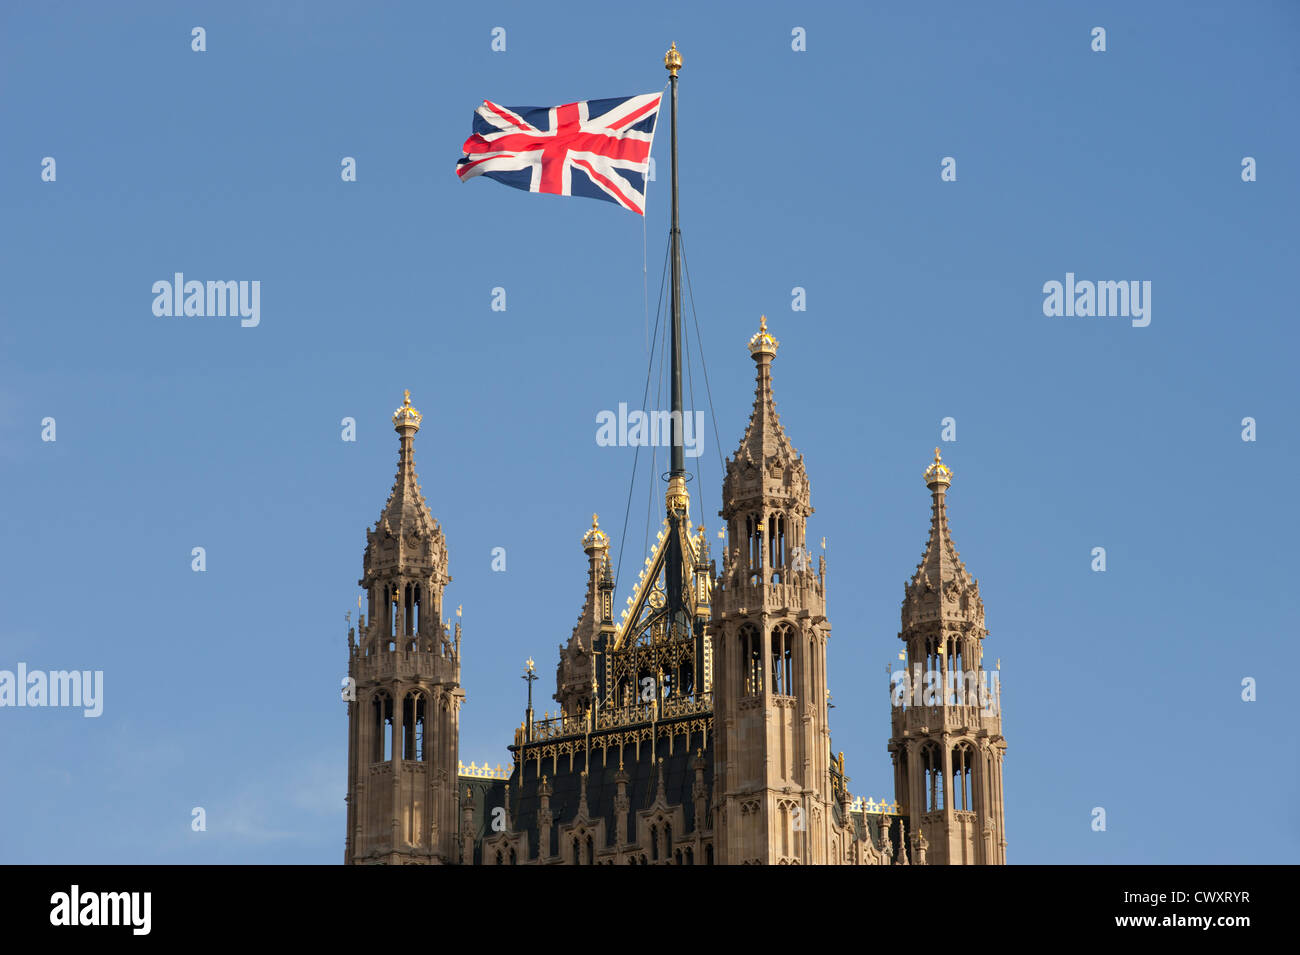 L'Unione di bandiera o di 'Unione Jack' sollevata sopra il Victoria torre presso il Palazzo di Westminster a Londra, Inghilterra, Regno Unito. Foto Stock